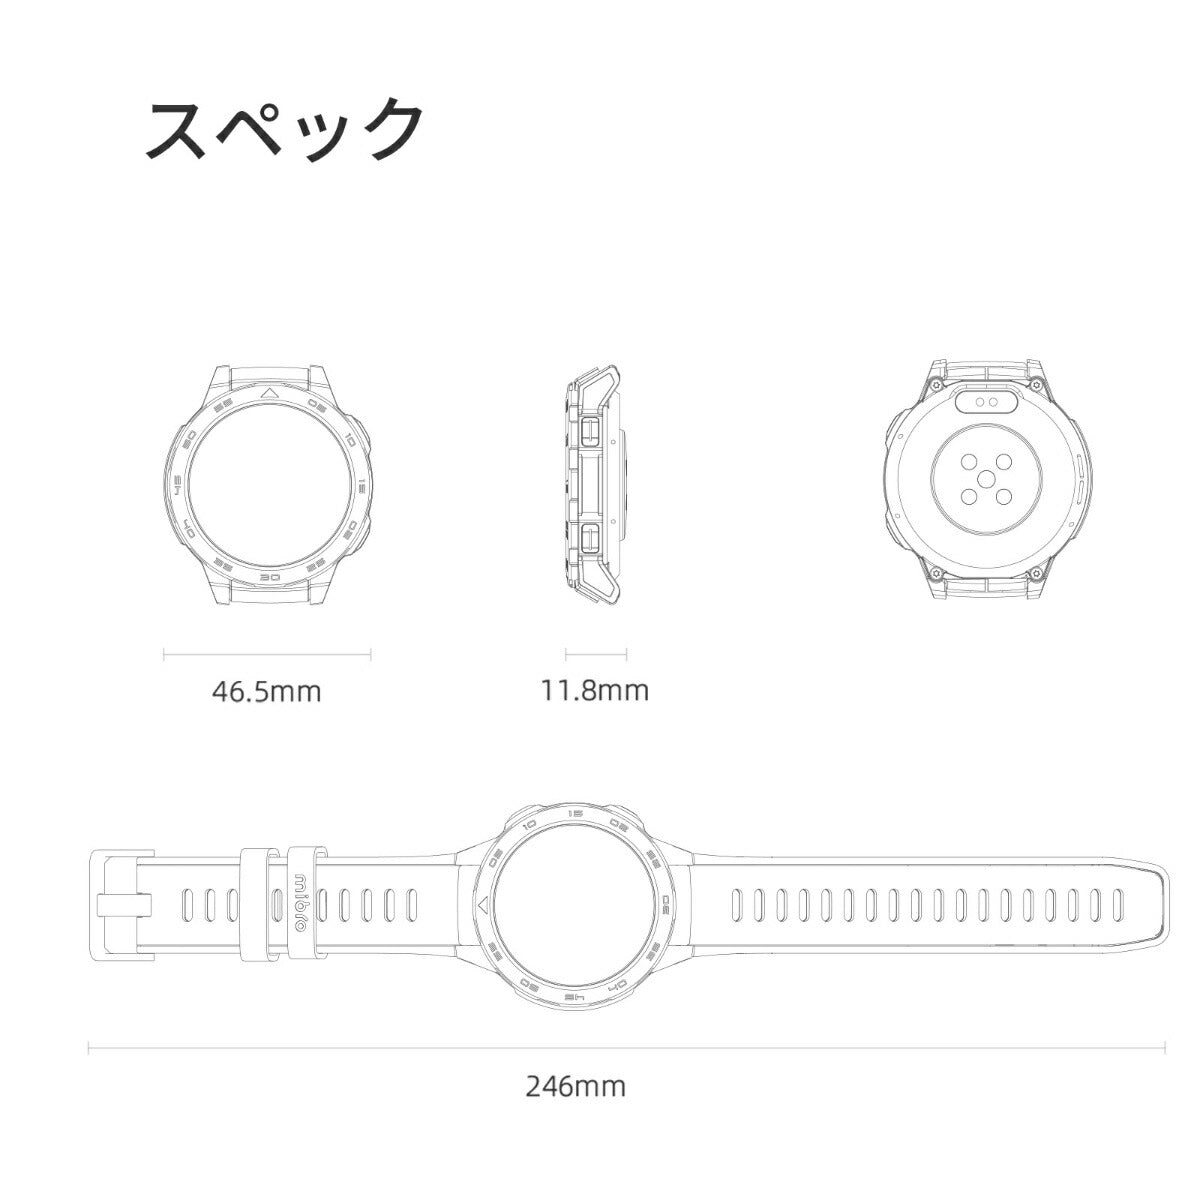 ミブロ Mibro スマートウォッチ Mibro Watch GS Pro SP380009-C01 腕時計 メンズ レディース